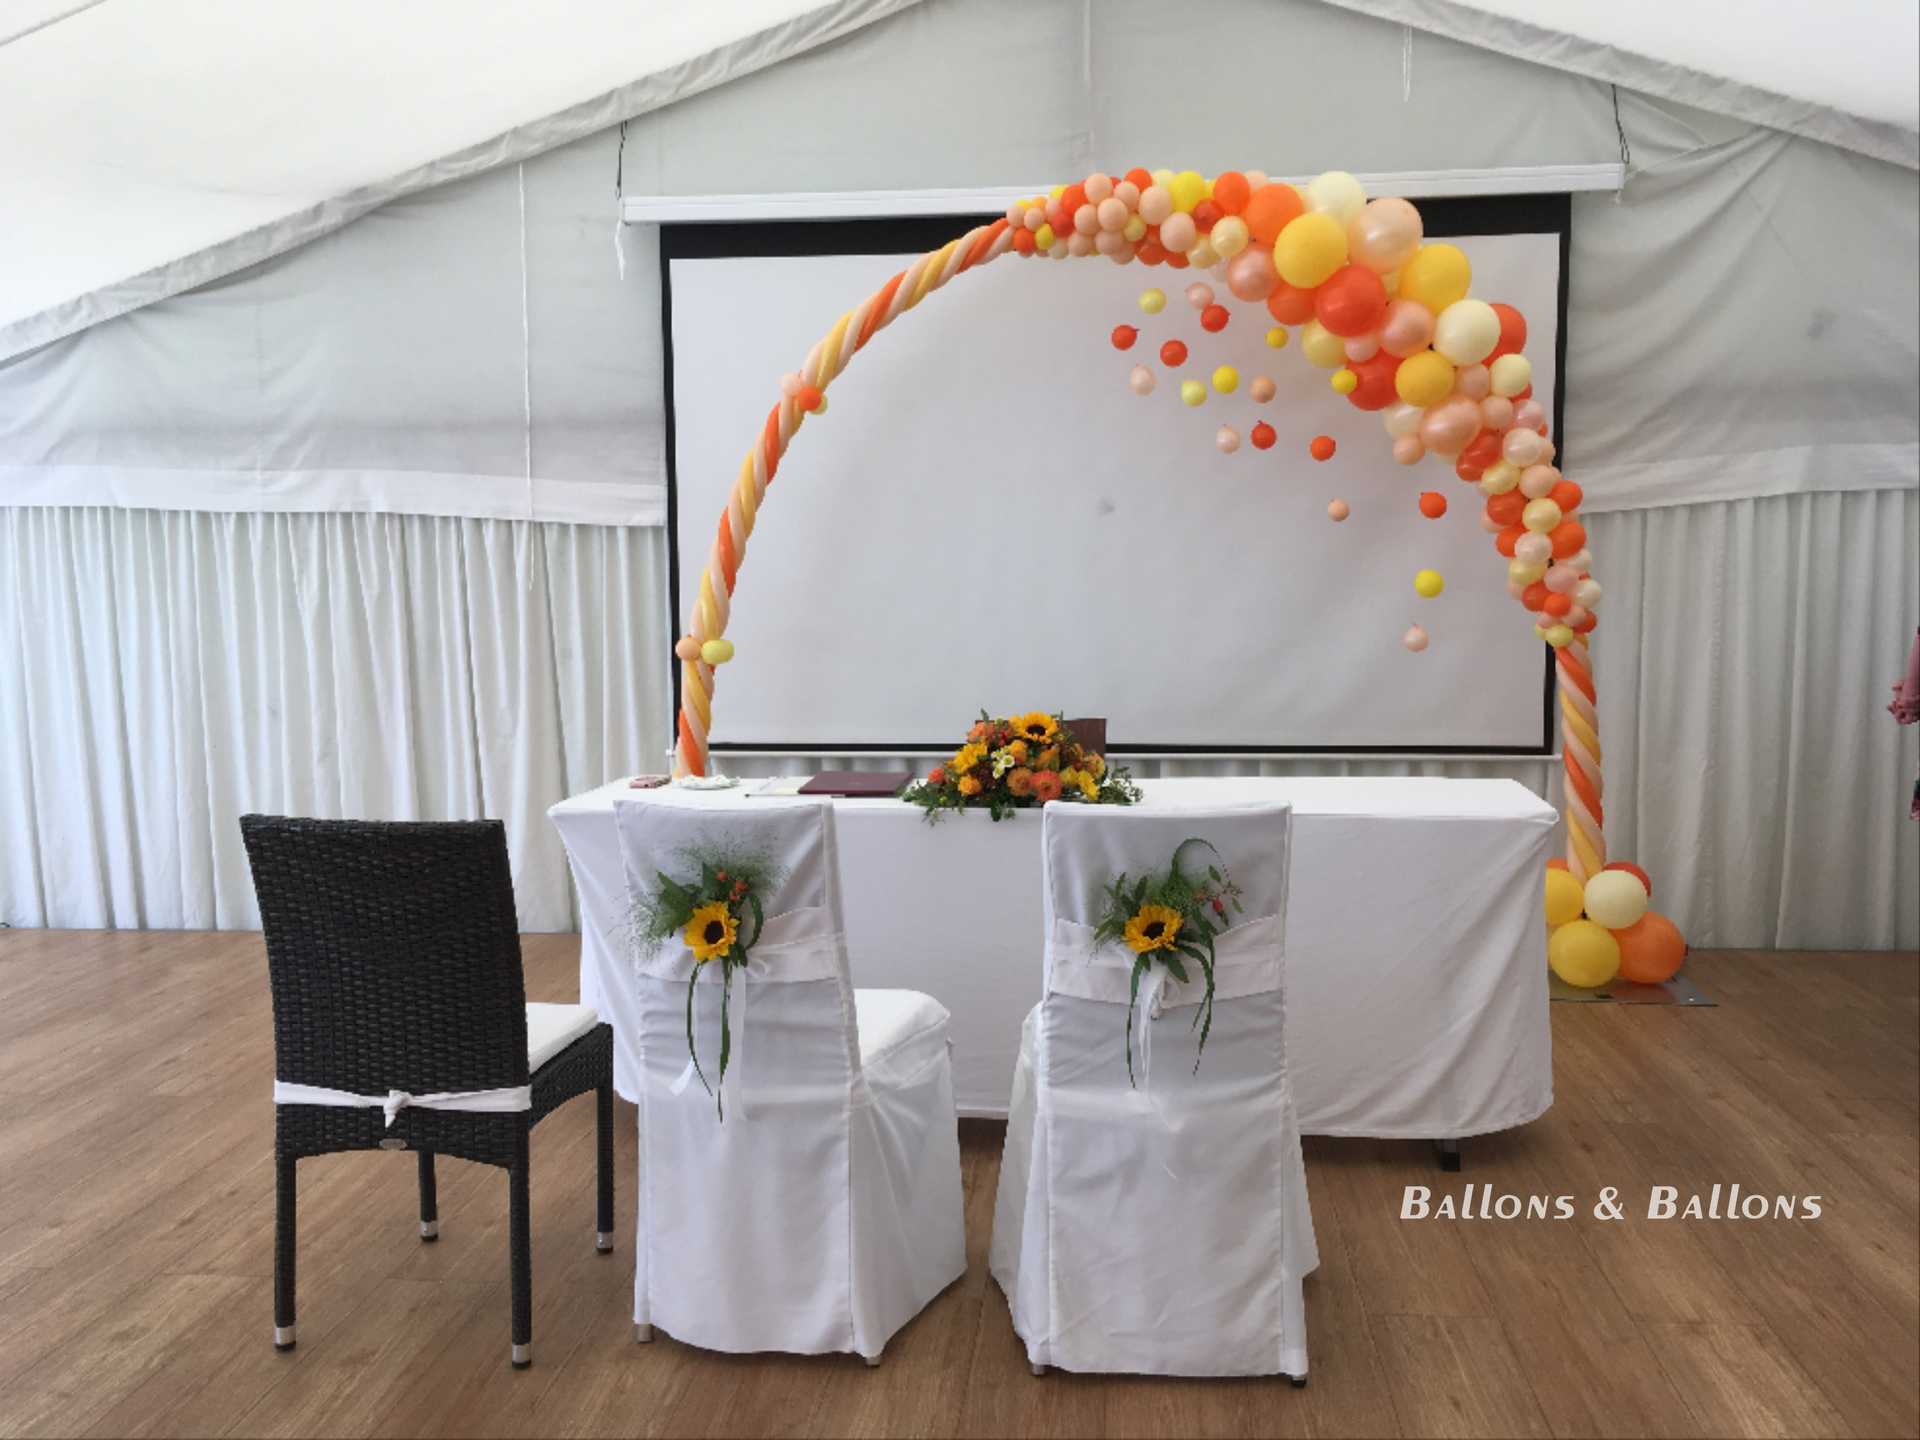 Zwei Stühle neben einer Bühne mit Ballons, einem Tisch und einem Bildschirm.